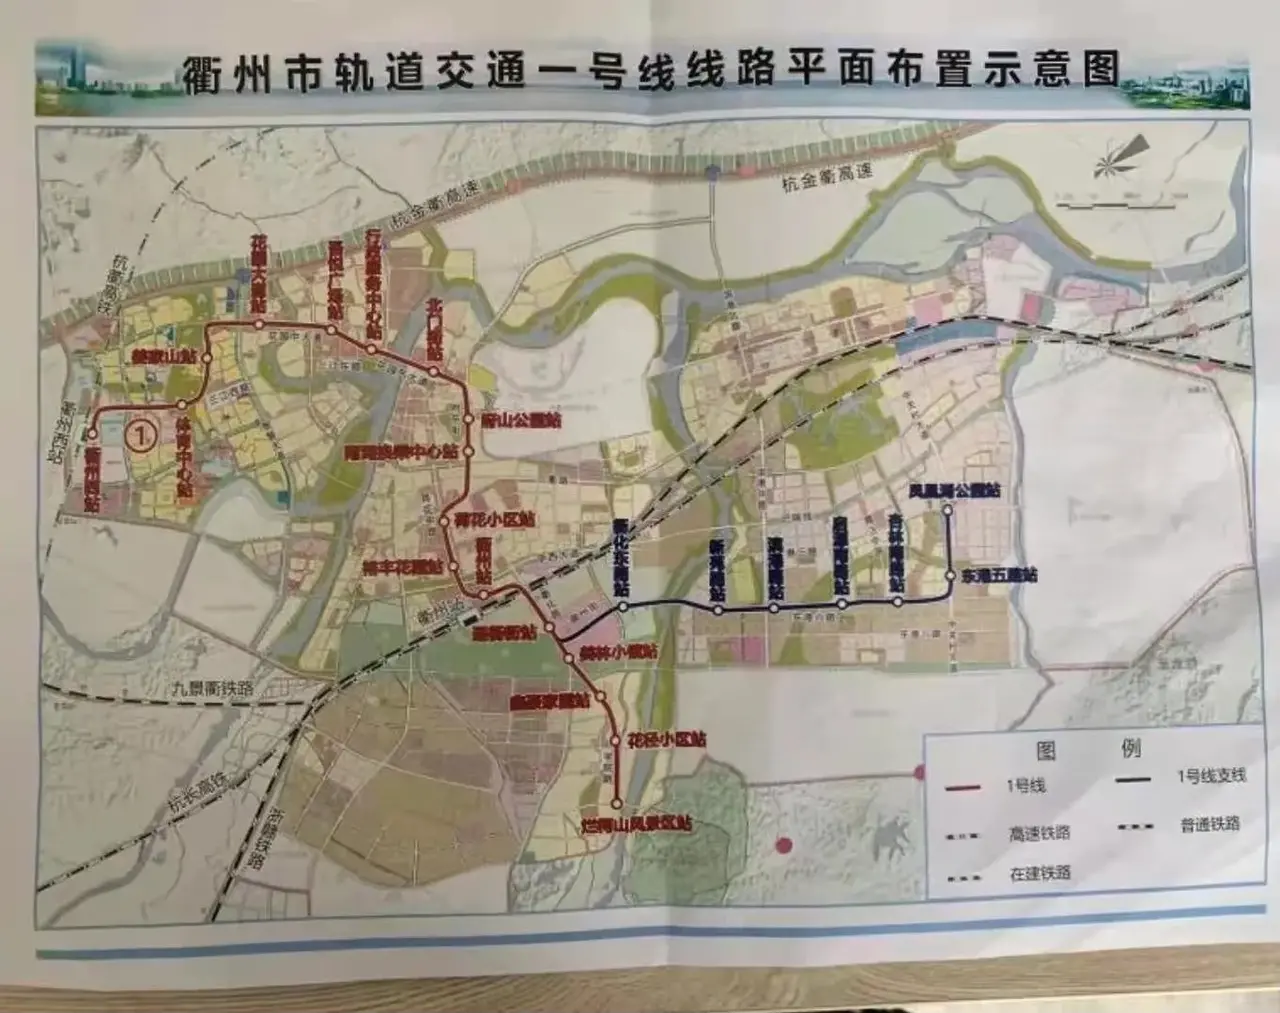 这张在网上流传的衢州市轨道交通一号线线路平面